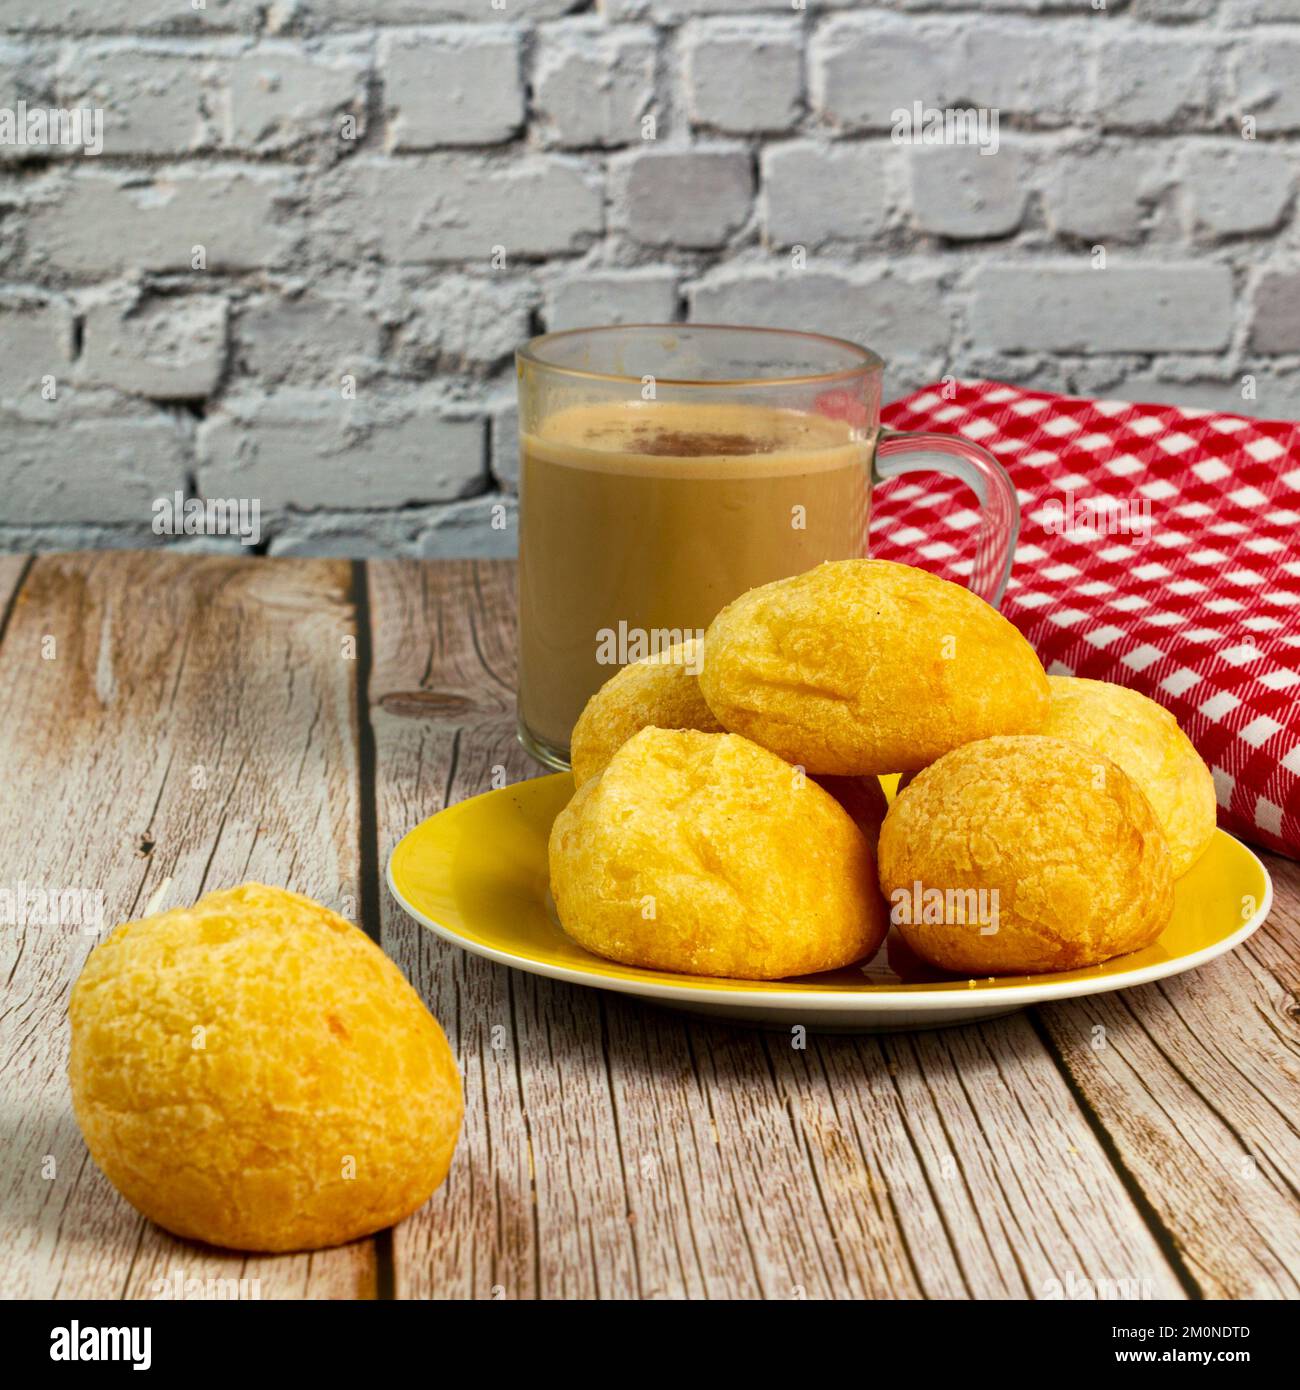 Colazione tradizionale brasiliana, pane al formaggio e caffè con latte. Messa a fuoco selettiva. Immagine quadrata per i post sui social media. Foto Stock